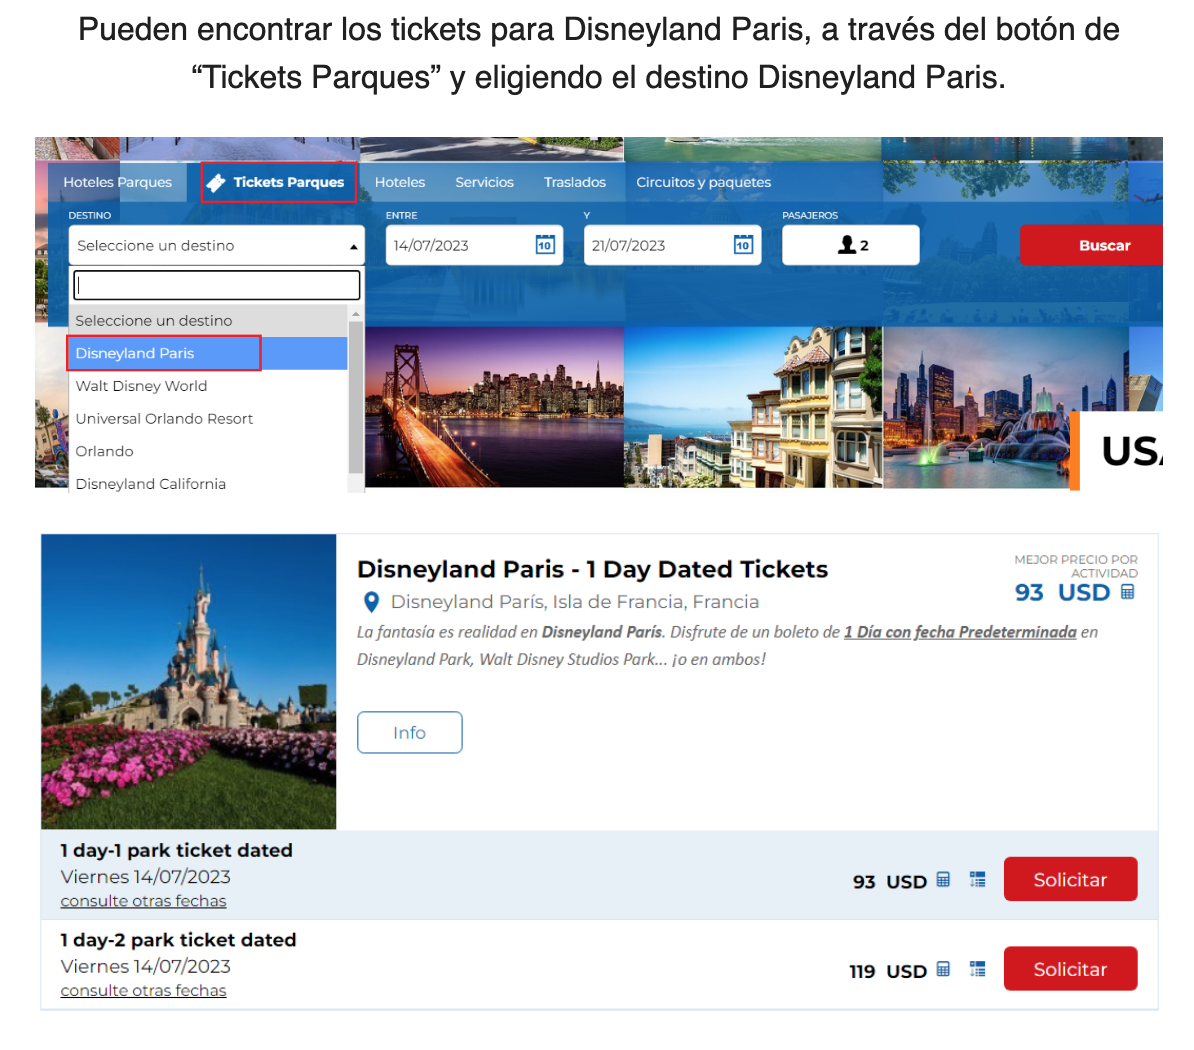 ejemplo pagina web para cotizar tickets disneyland paris